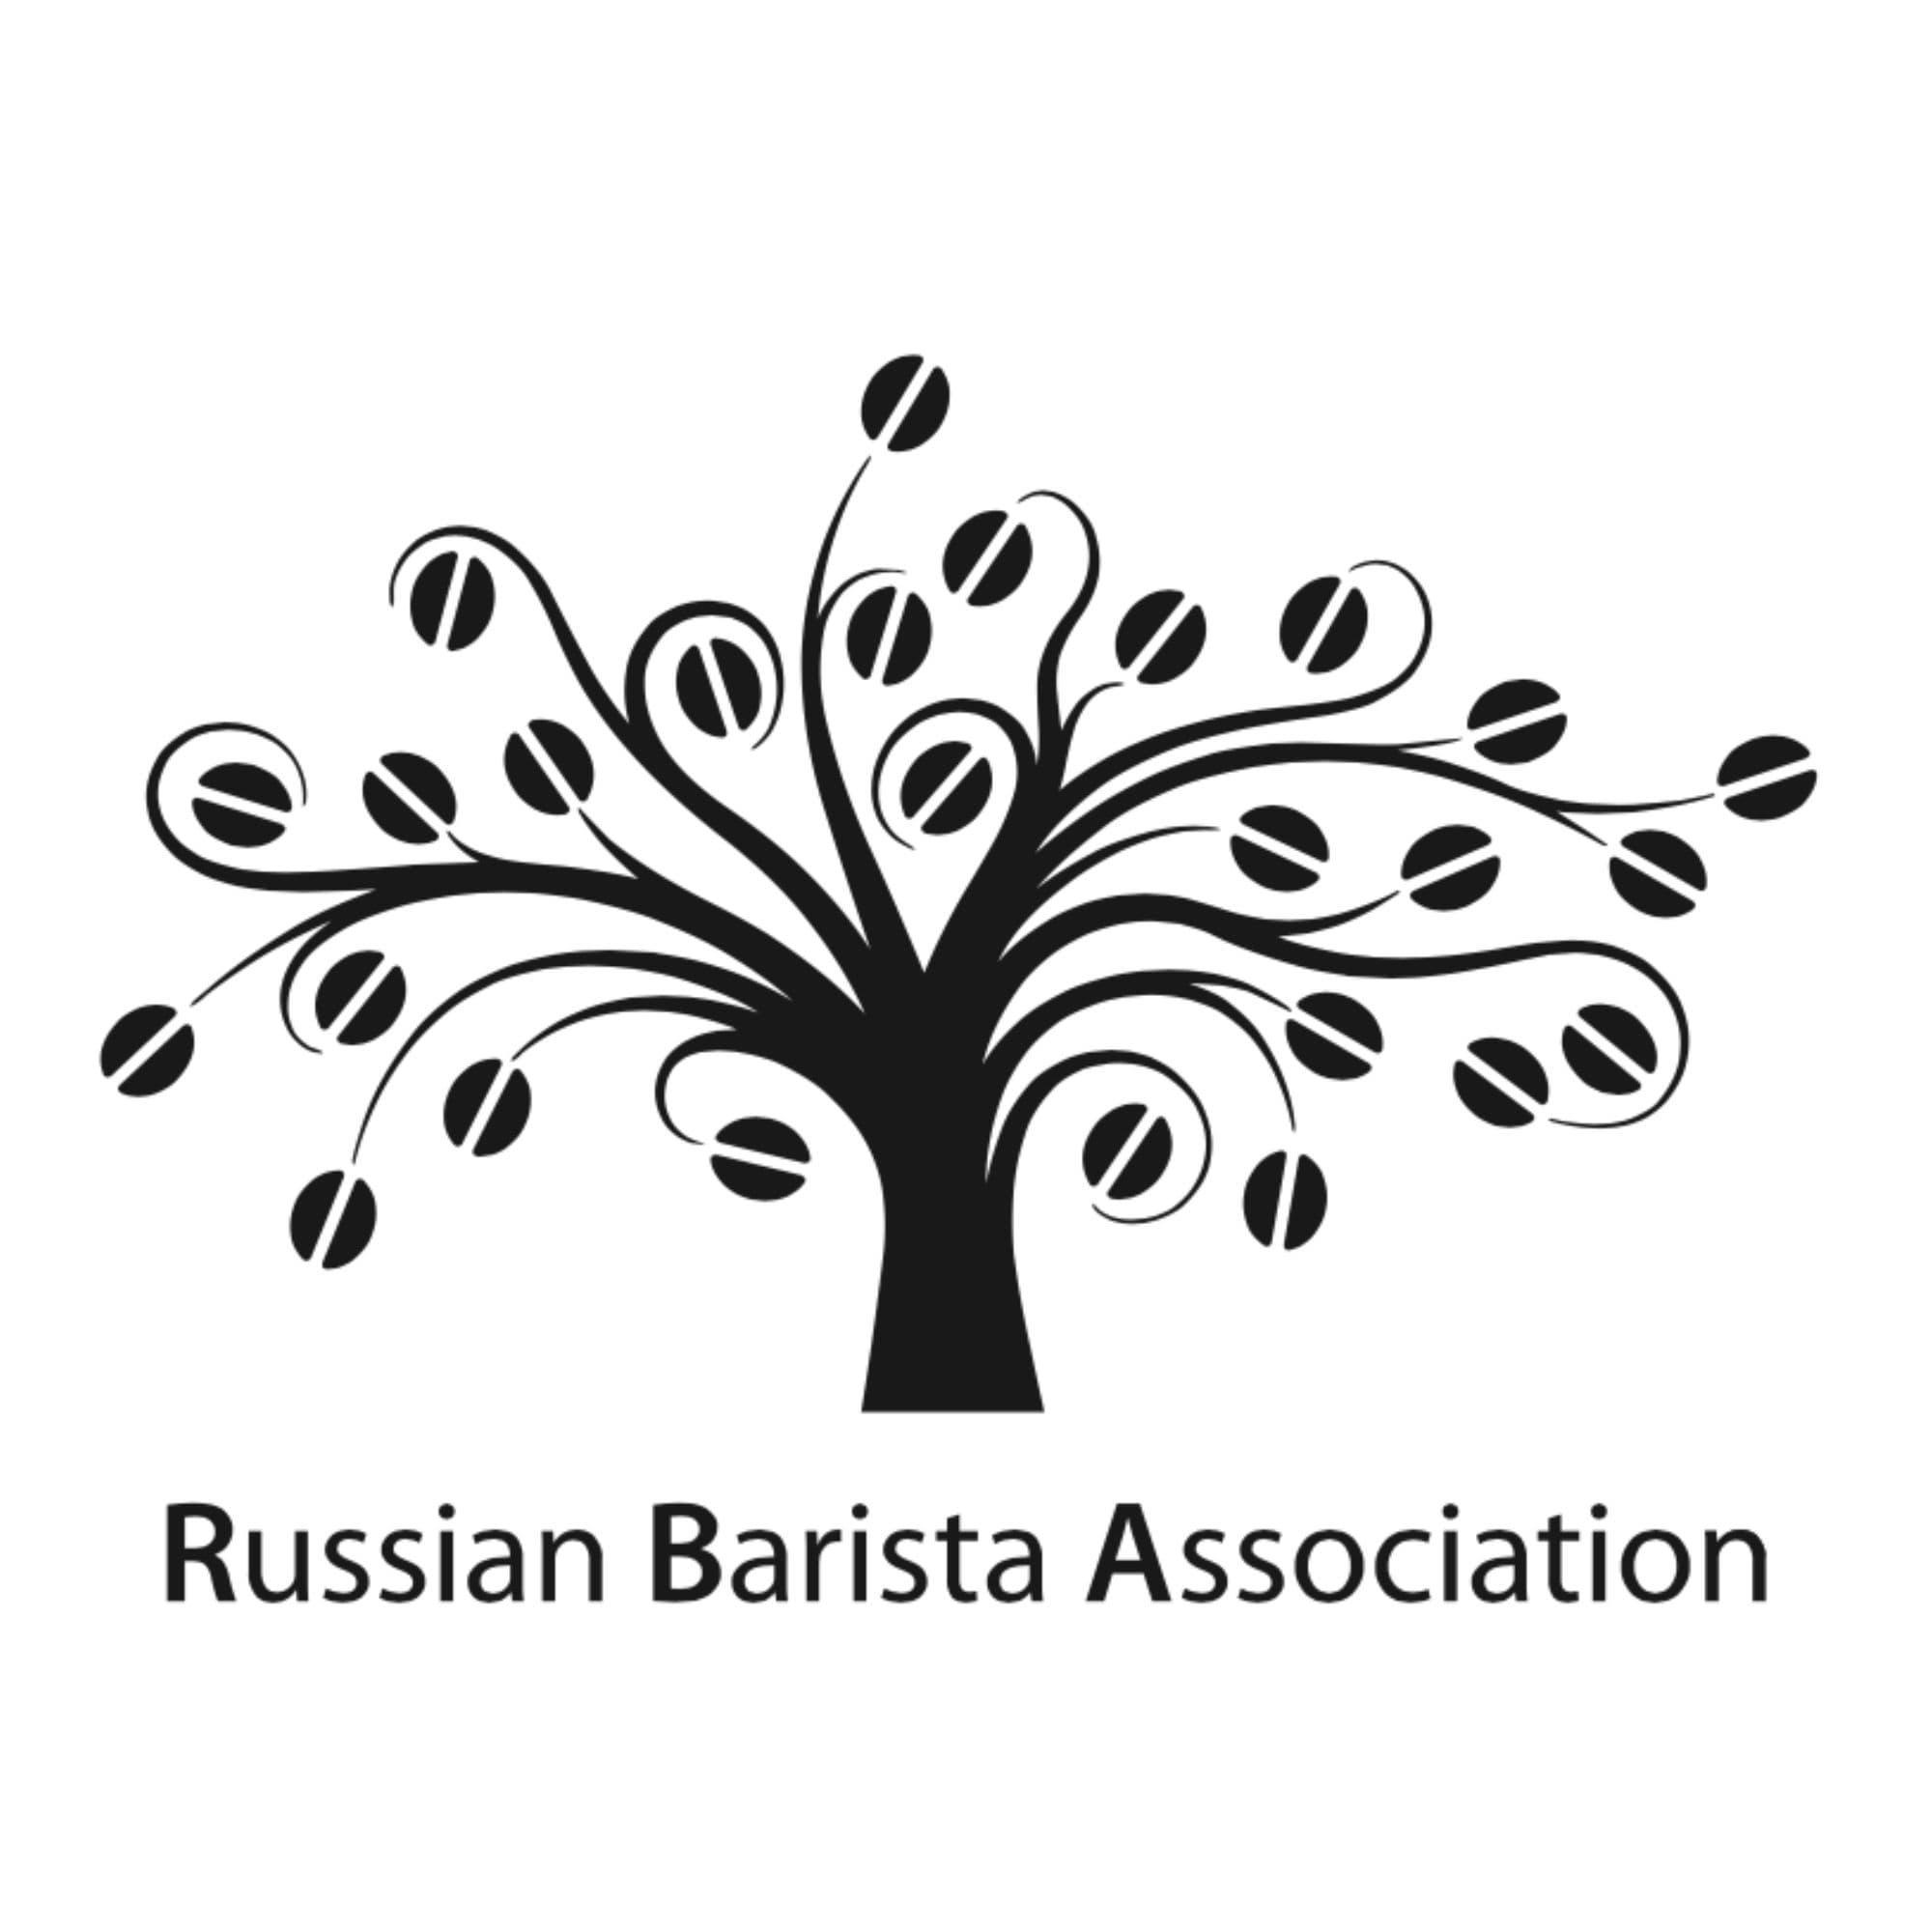 Russian Barista Association